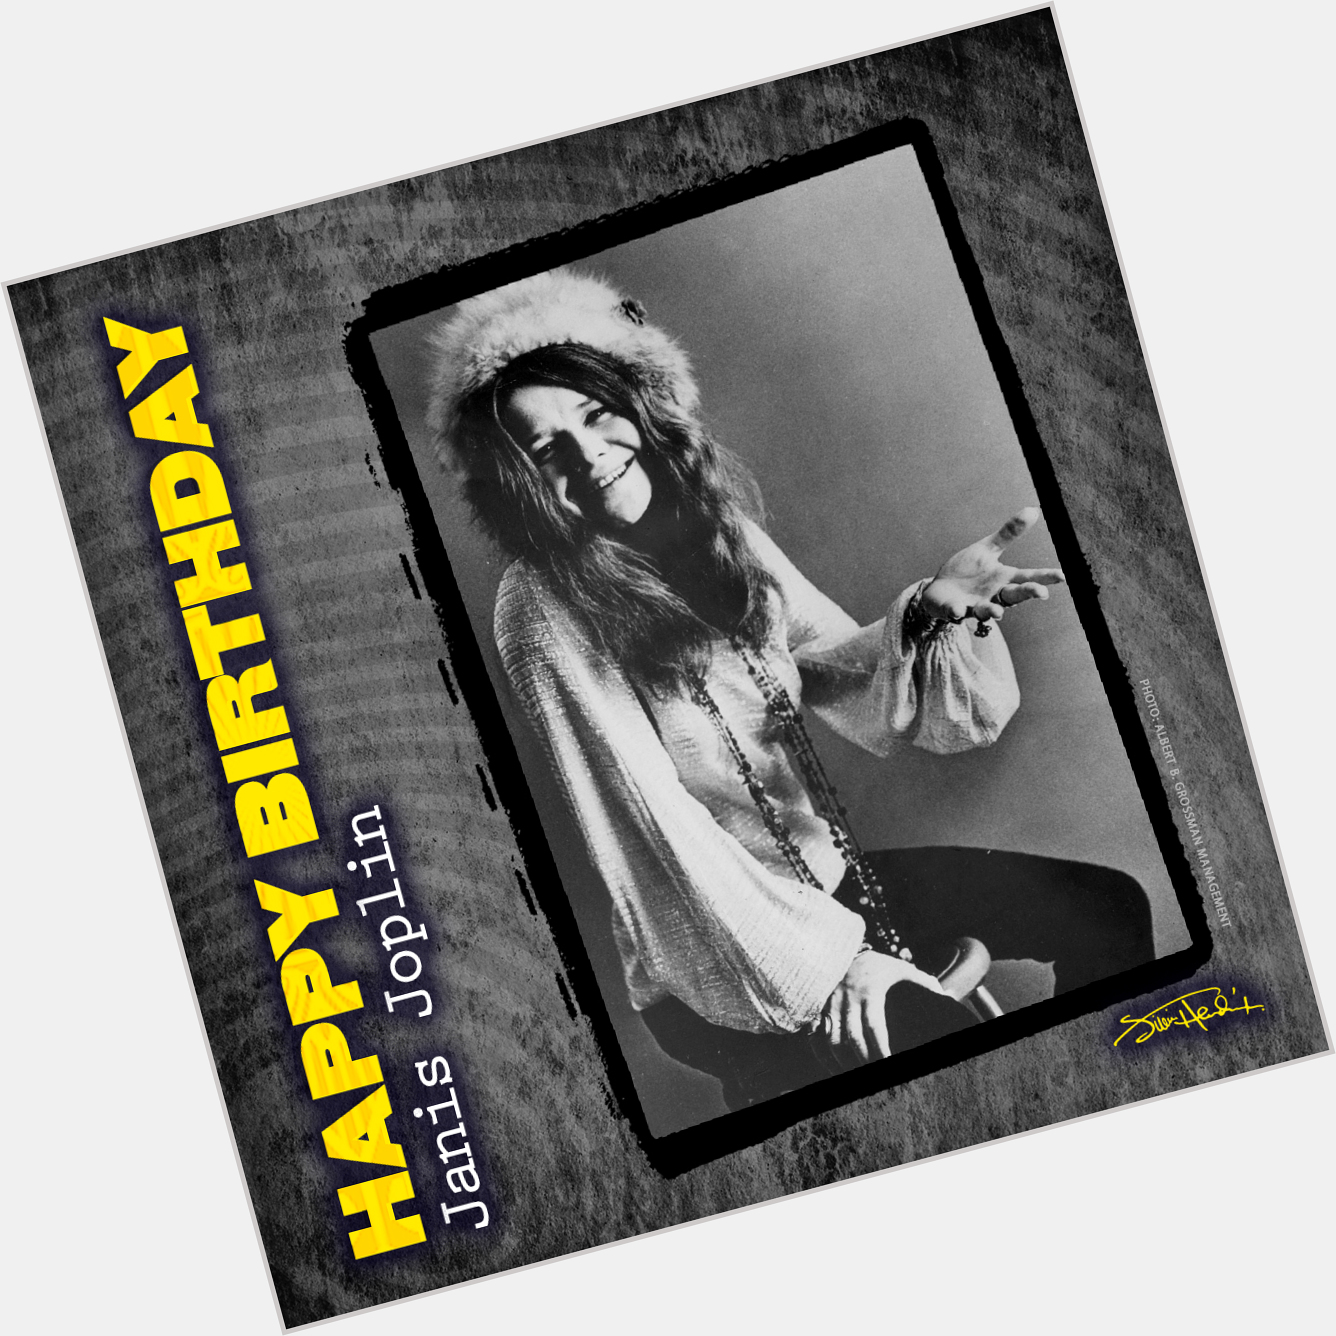 Happy Birthday to Janis Joplin
January 19, 1942 - October 4, 1970   